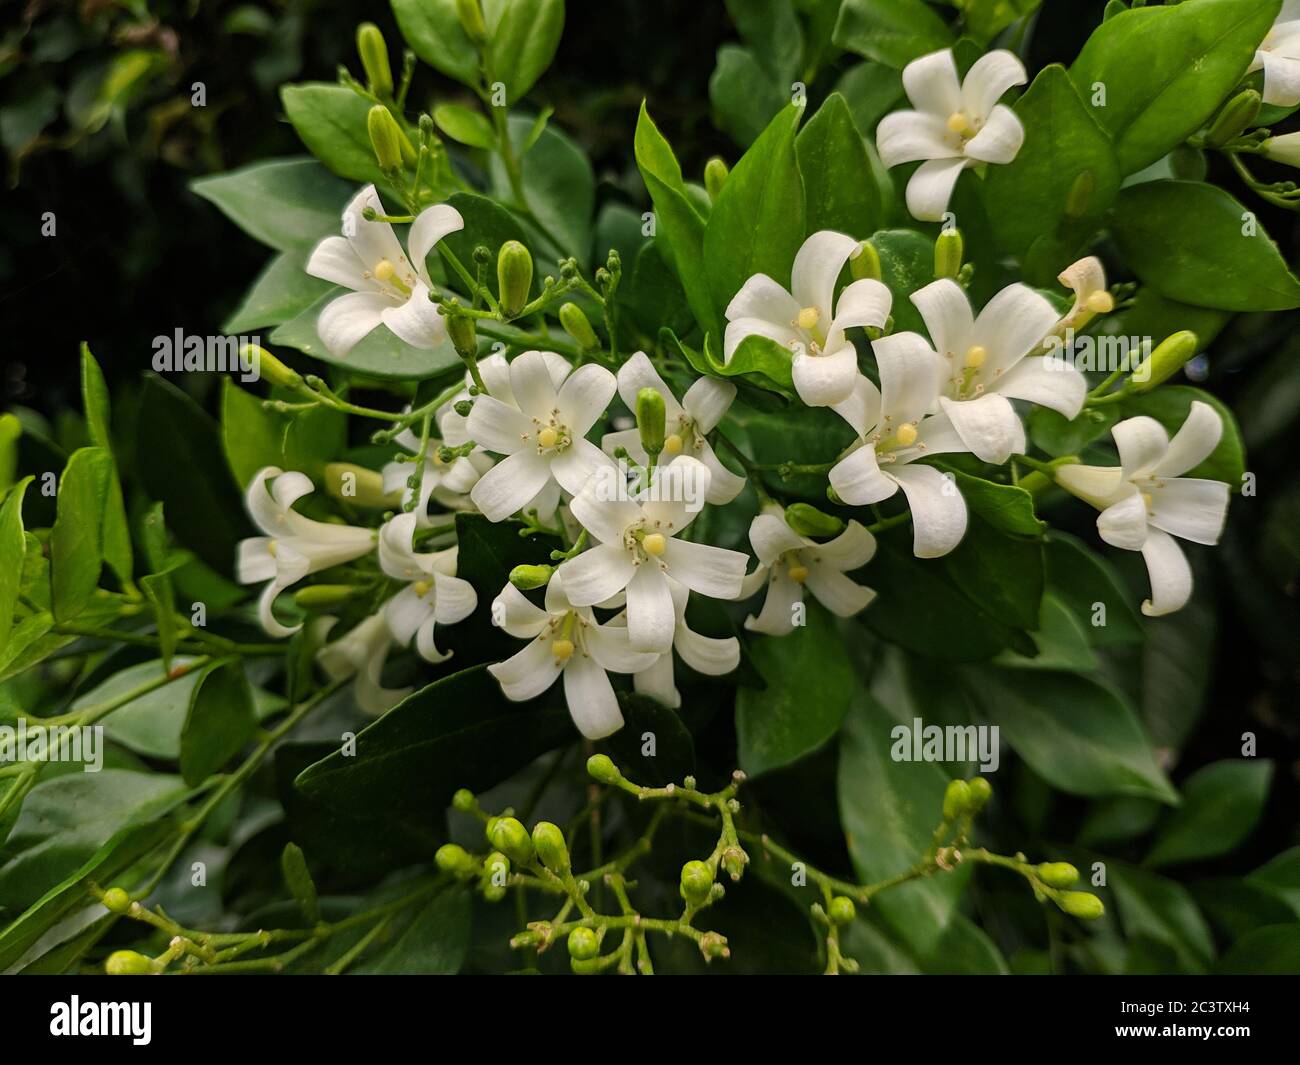 Flores blancas desconocidas con pistilo amarillo en el jardín Foto de stock